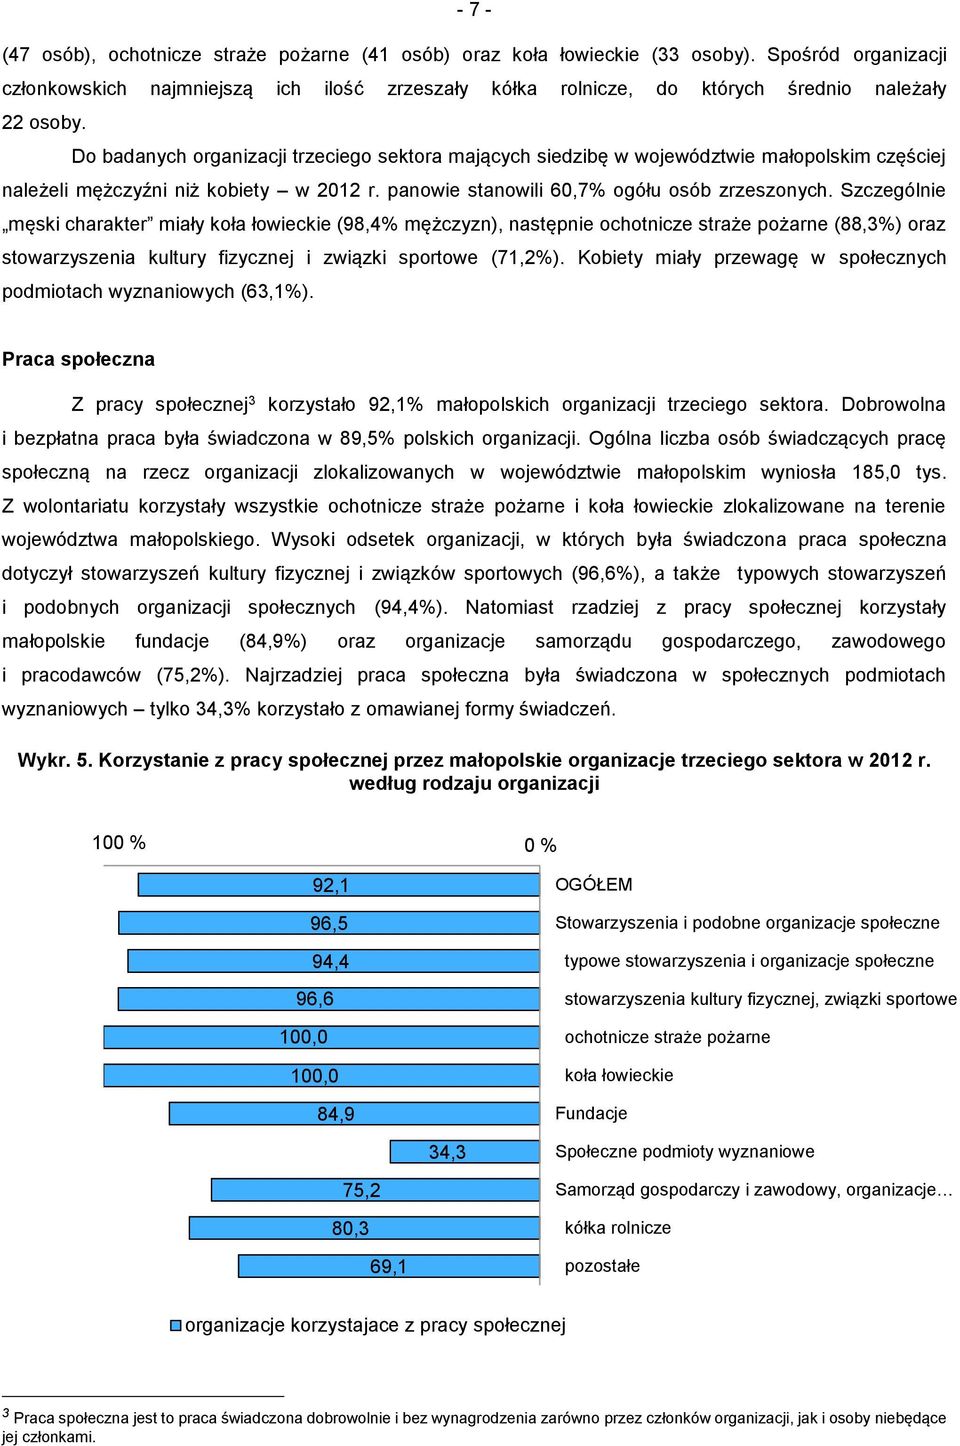 Do badanych organizacji trzeciego sektora mających siedzibę w województwie małopolskim częściej należeli mężczyźni niż kobiety w 2012 r. panowie stanowili 60,7% ogółu osób zrzeszonych.